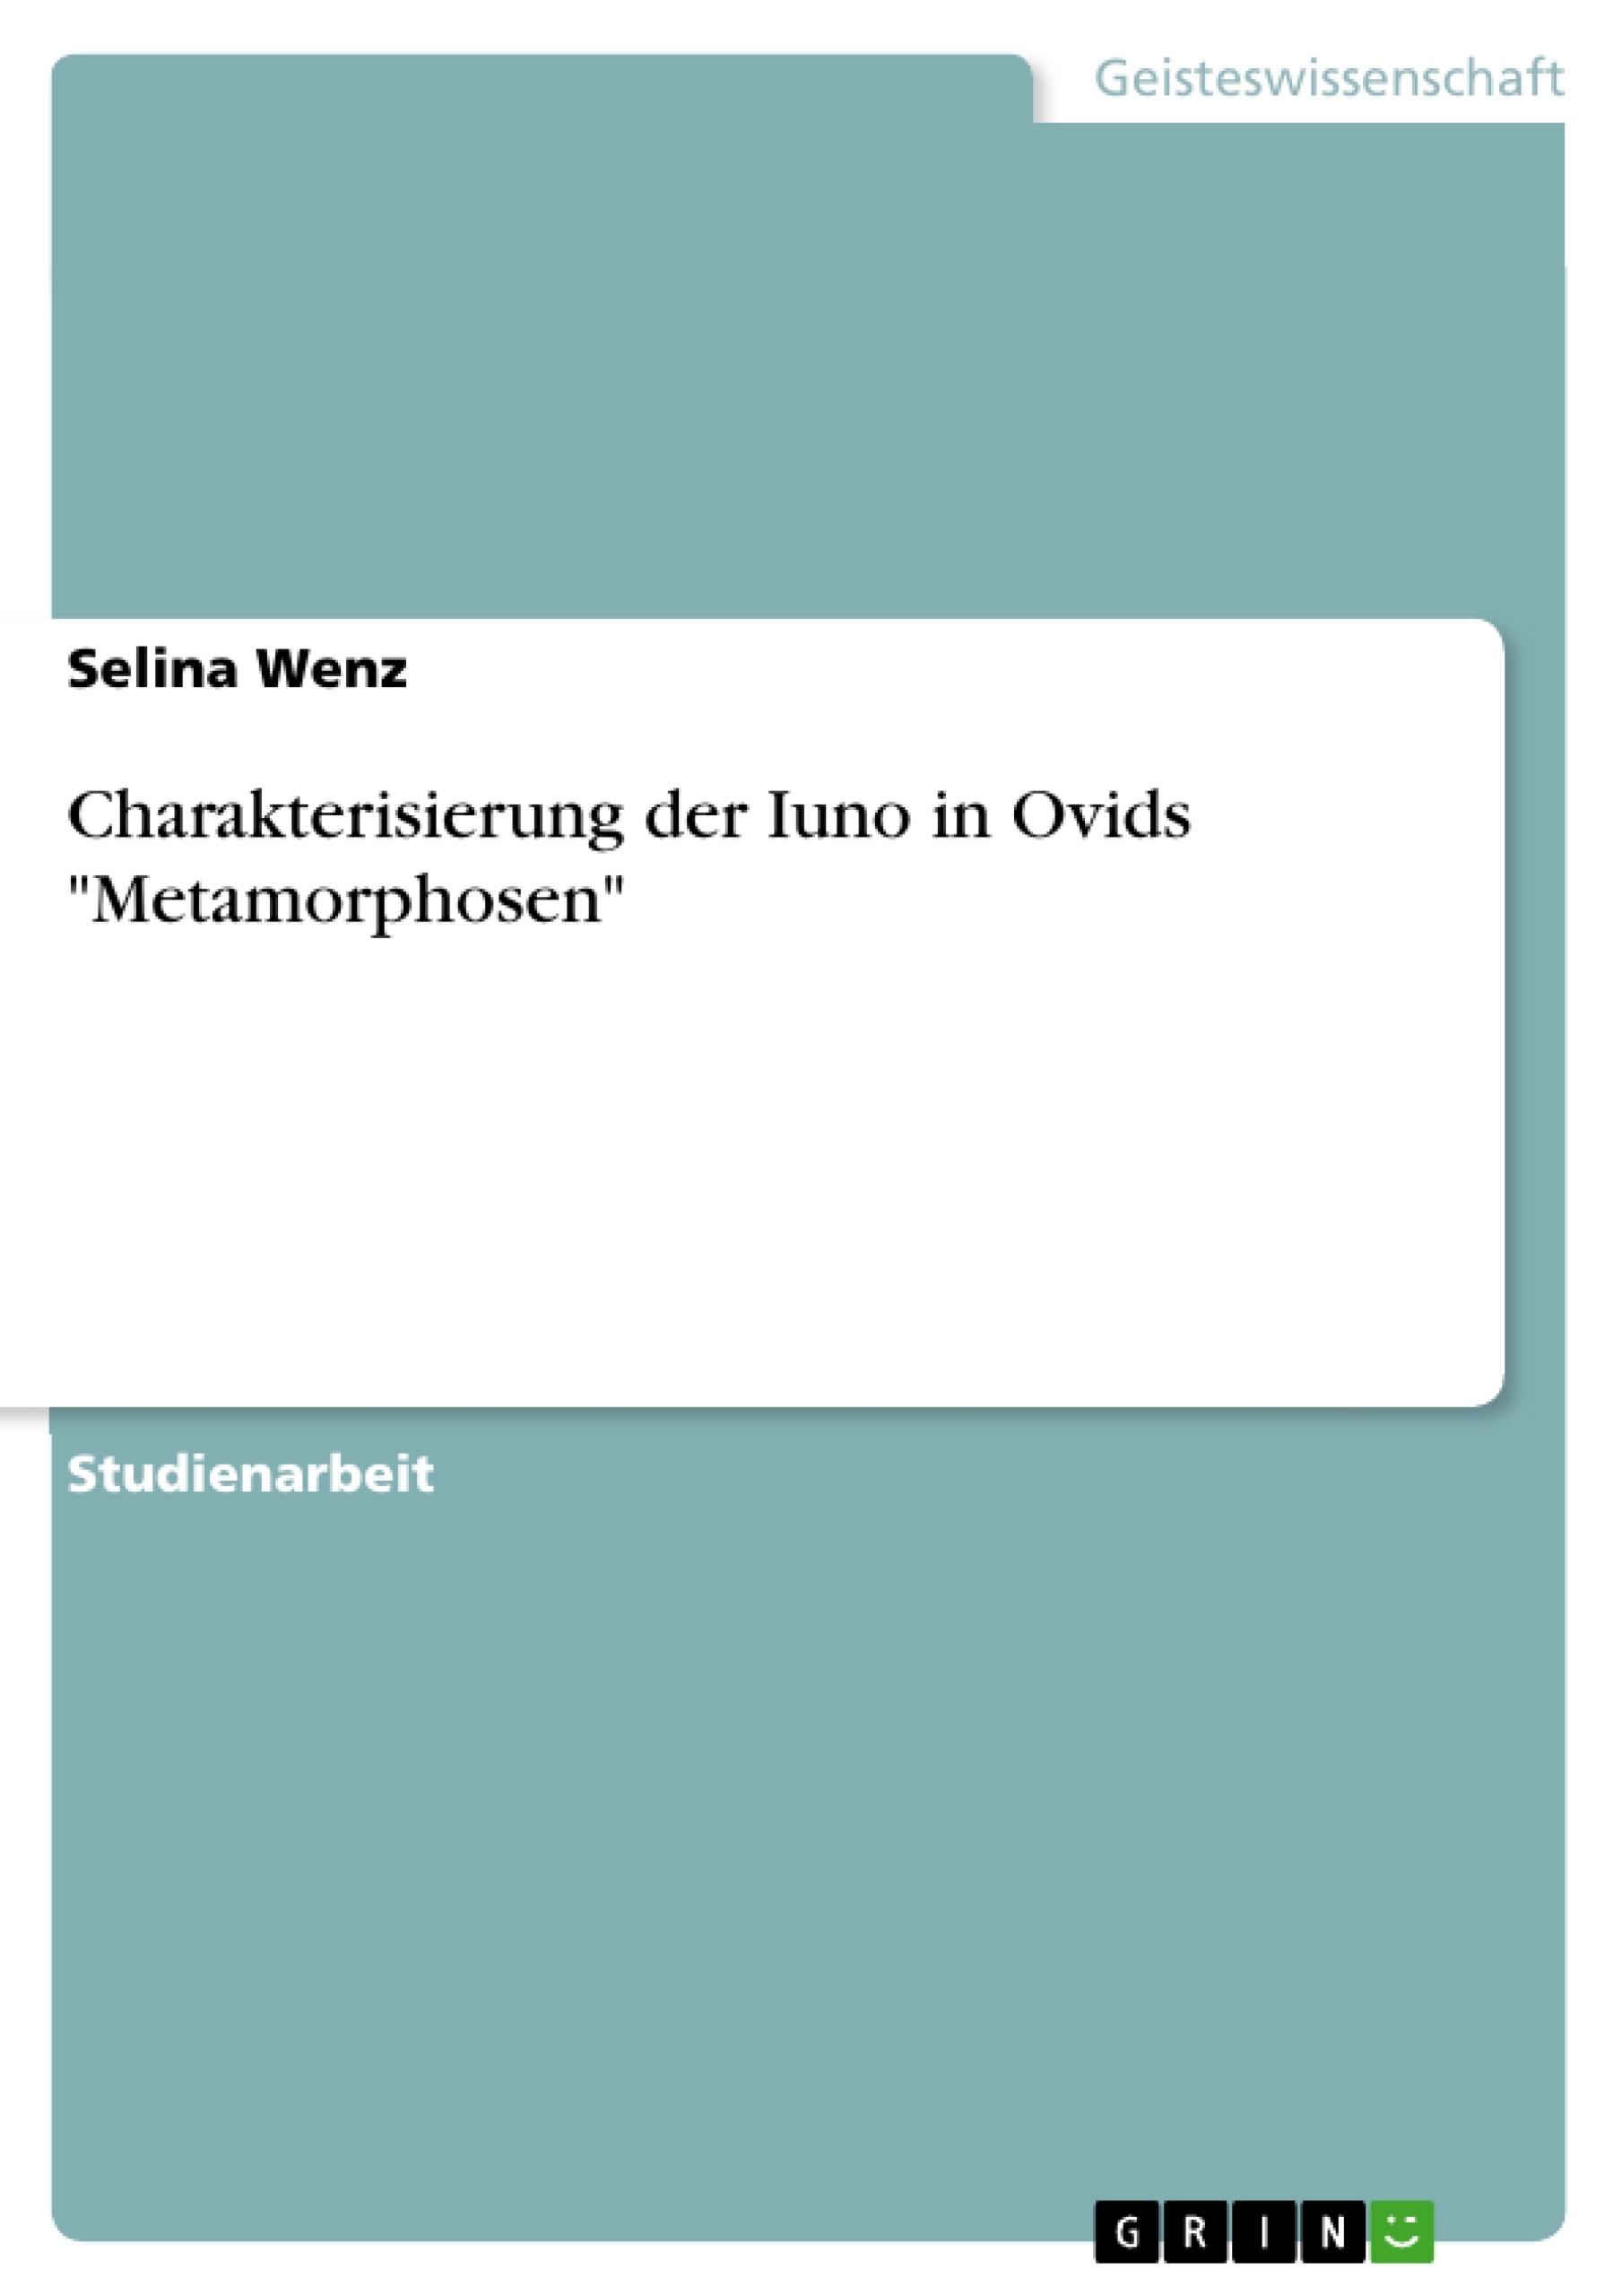 Title: Charakterisierung der Iuno in Ovids "Metamorphosen"